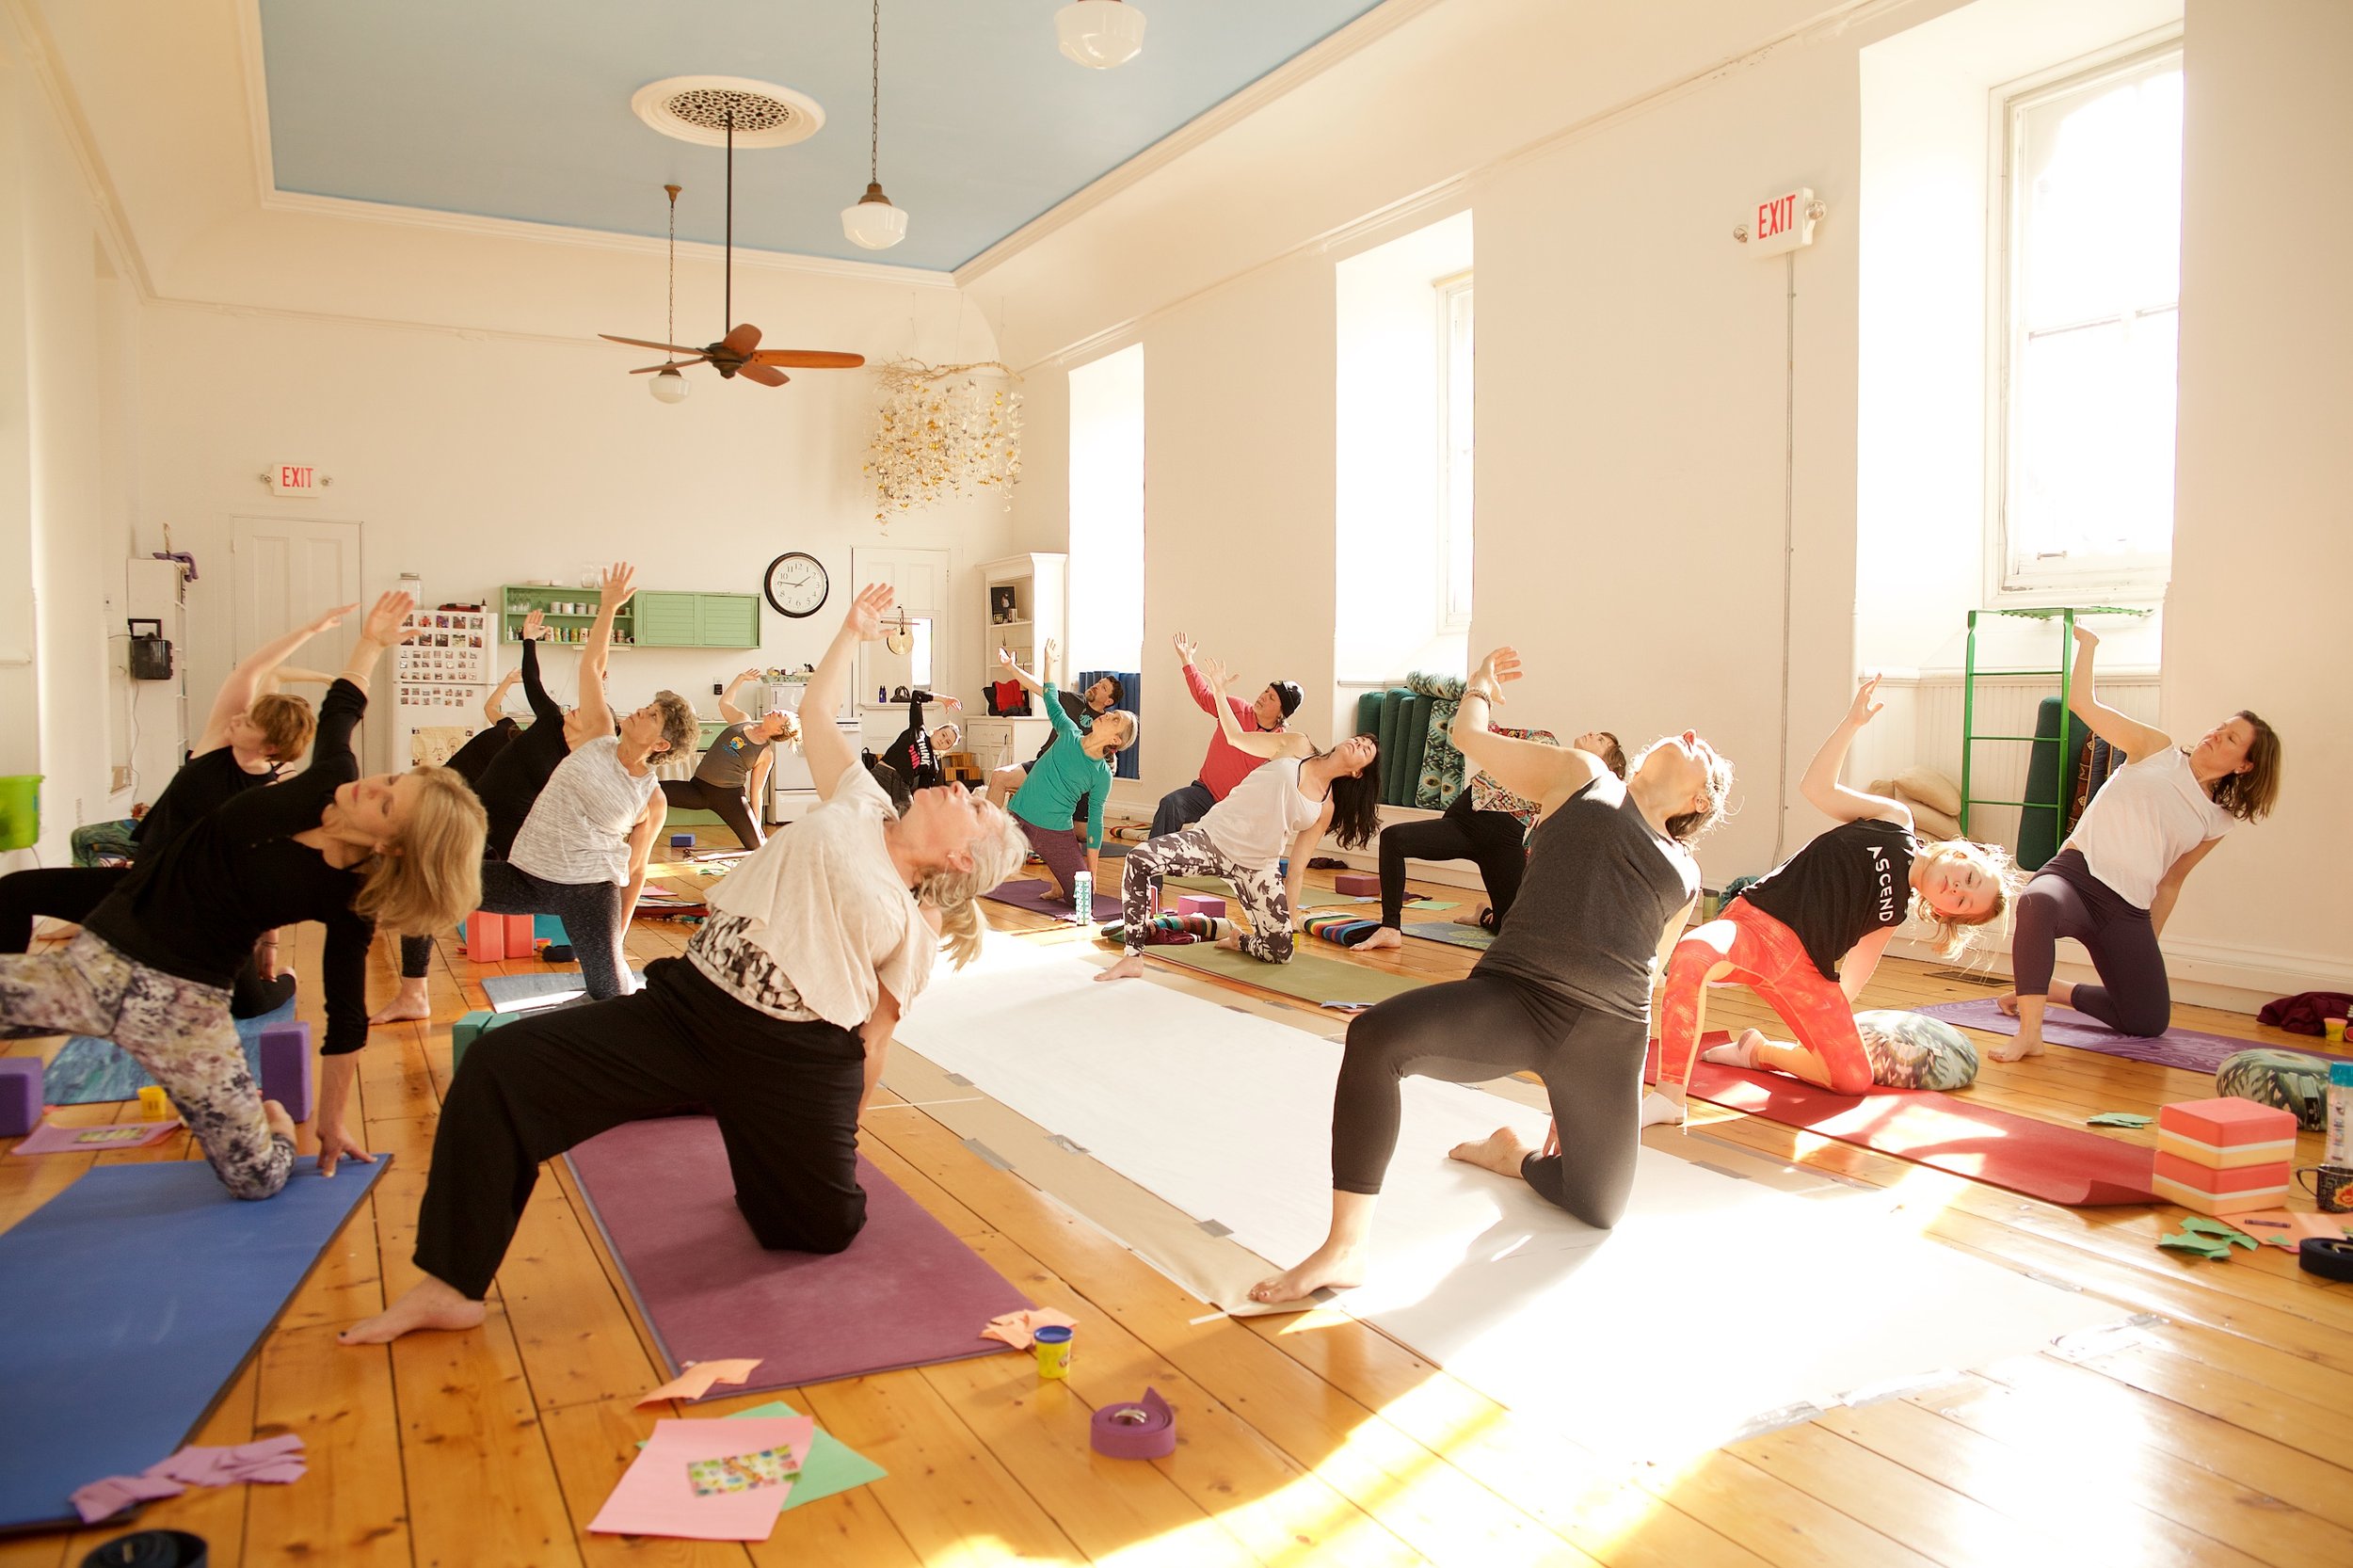 Heartful yoga Workshop at Ascend  - dani locastro.jpg